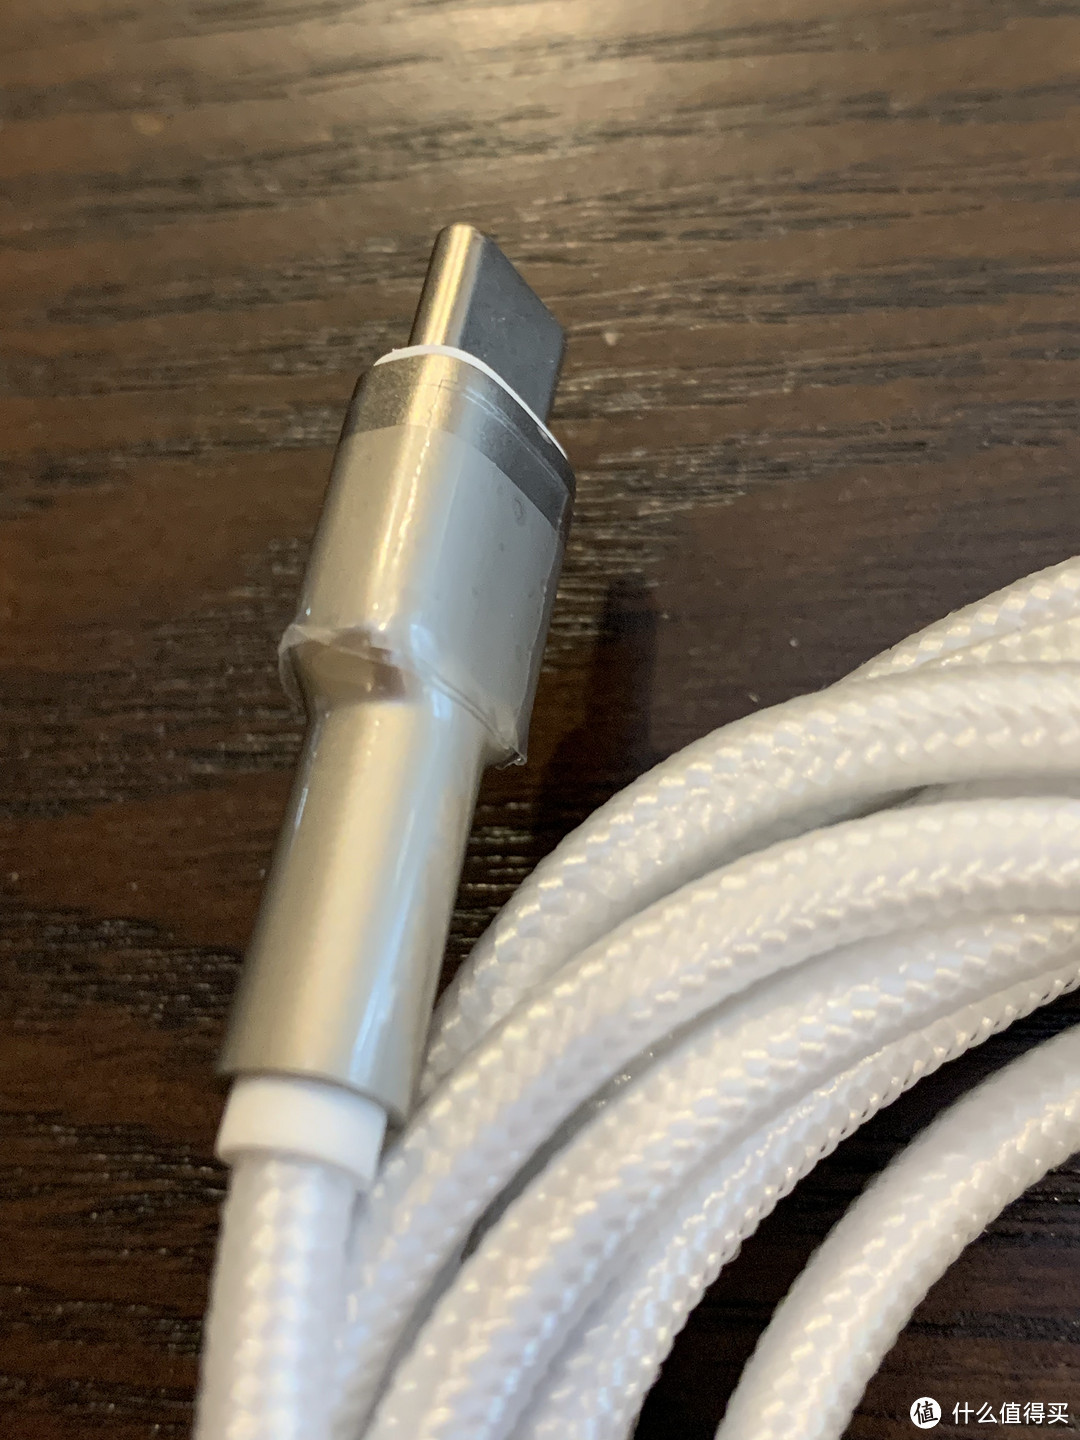 苹果自带的充电线不够长？试试第三方的数据线吧。